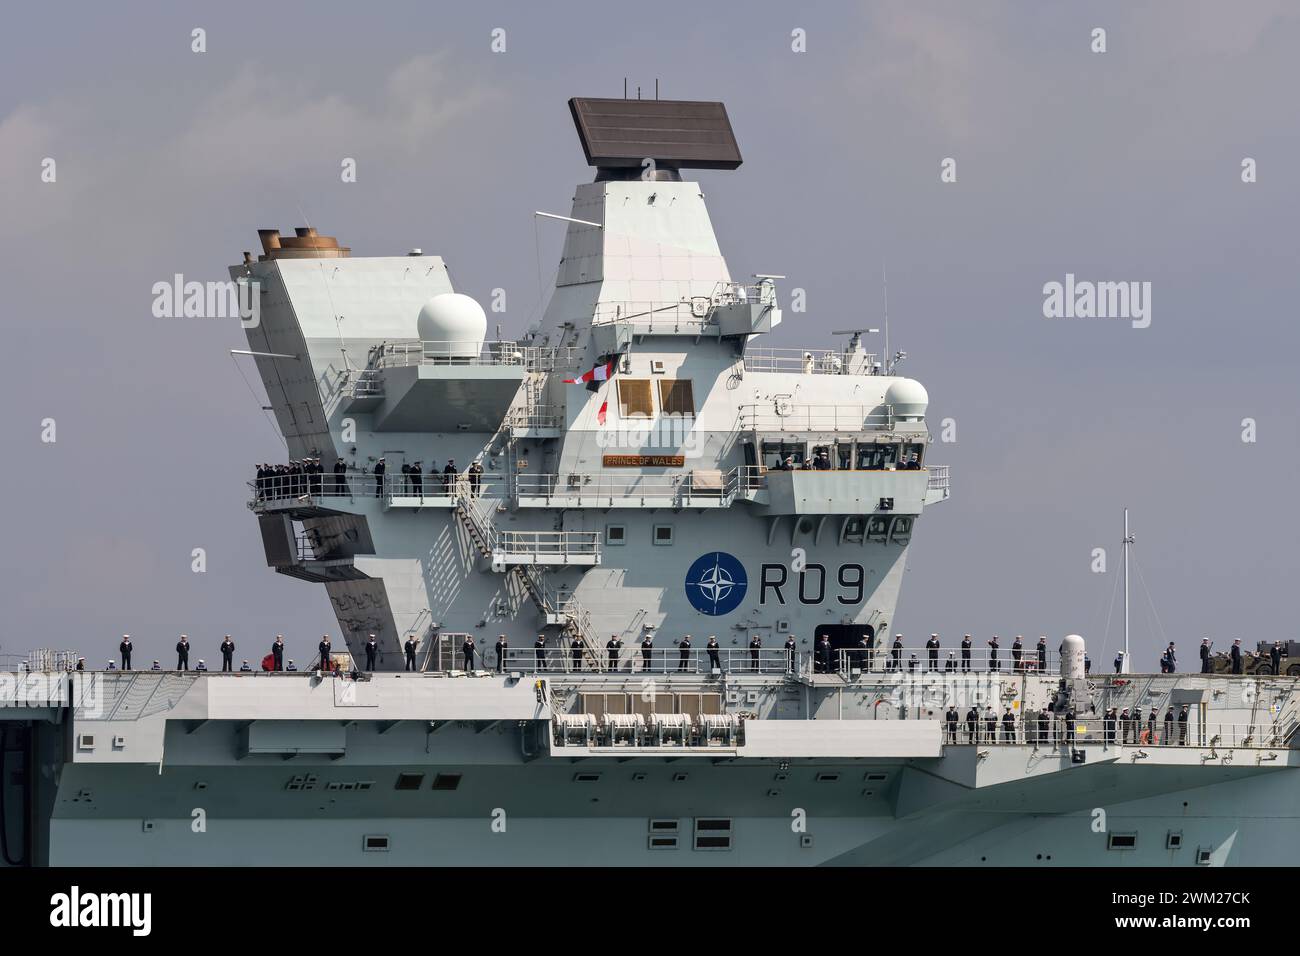 Vue de la passerelle de navigation, avec marquages OTAN, sur le porte-avions de la Royal Navy HMS Prince of Wales. Banque D'Images